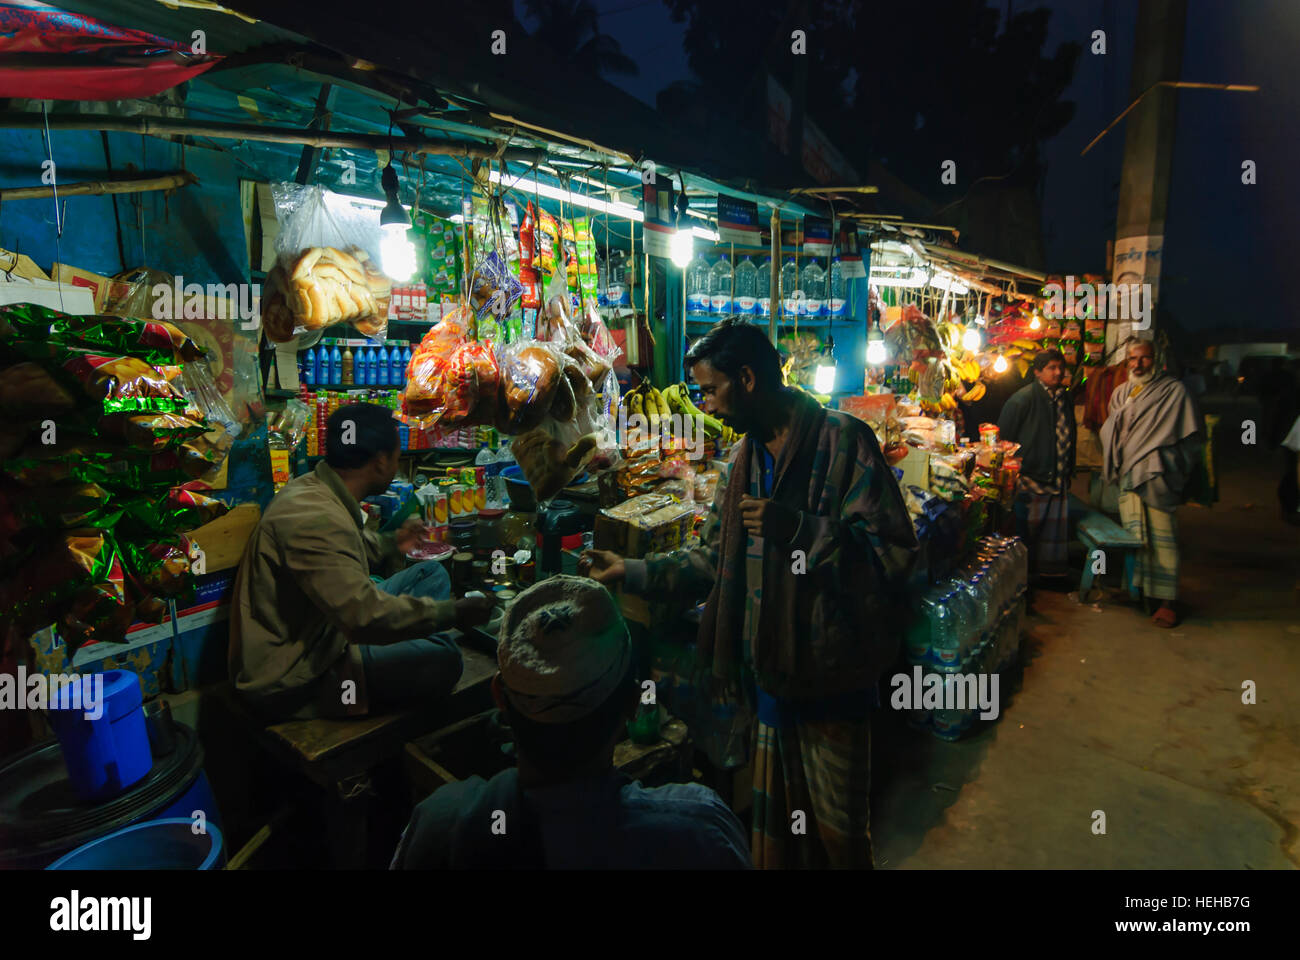 Barisal: Food stand, Barisal Division, Bangladesh Stock Photo